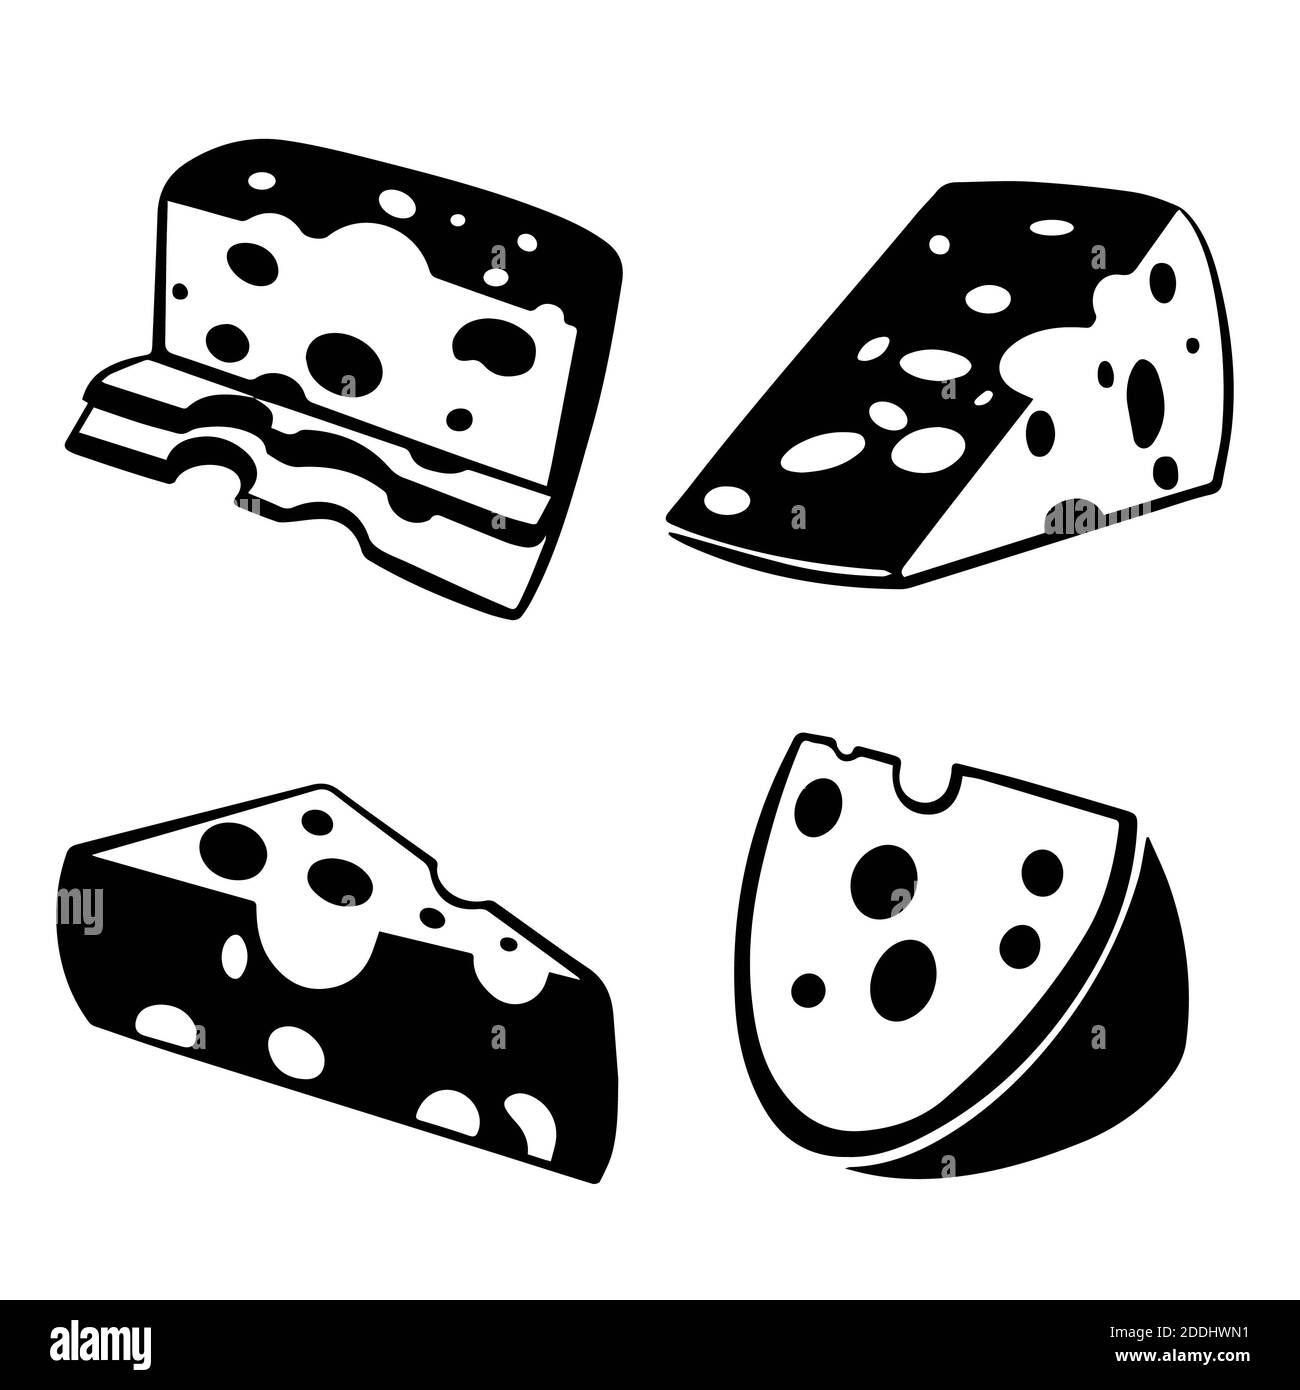 Vecteur de fromage sur fond isolé. Illustration des fromages icon monochrome. Banque D'Images